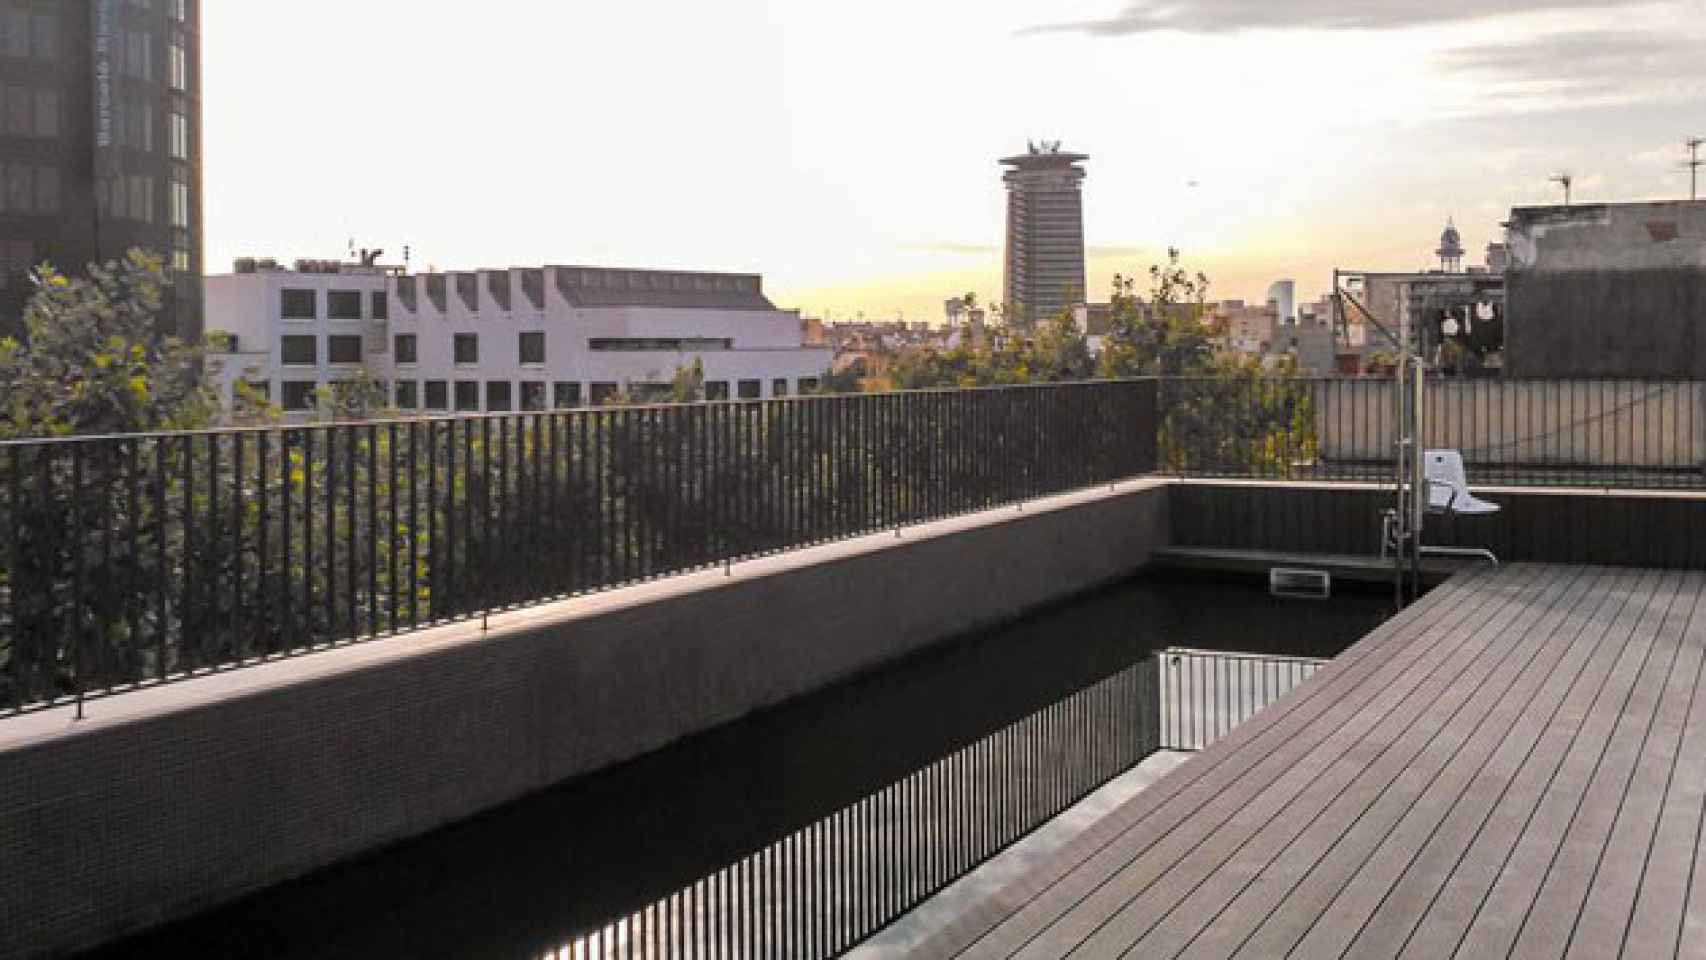 Piscina de la azotea del Niu Hotel, el último activo que abrirá Actahotels en Barcelona / CG